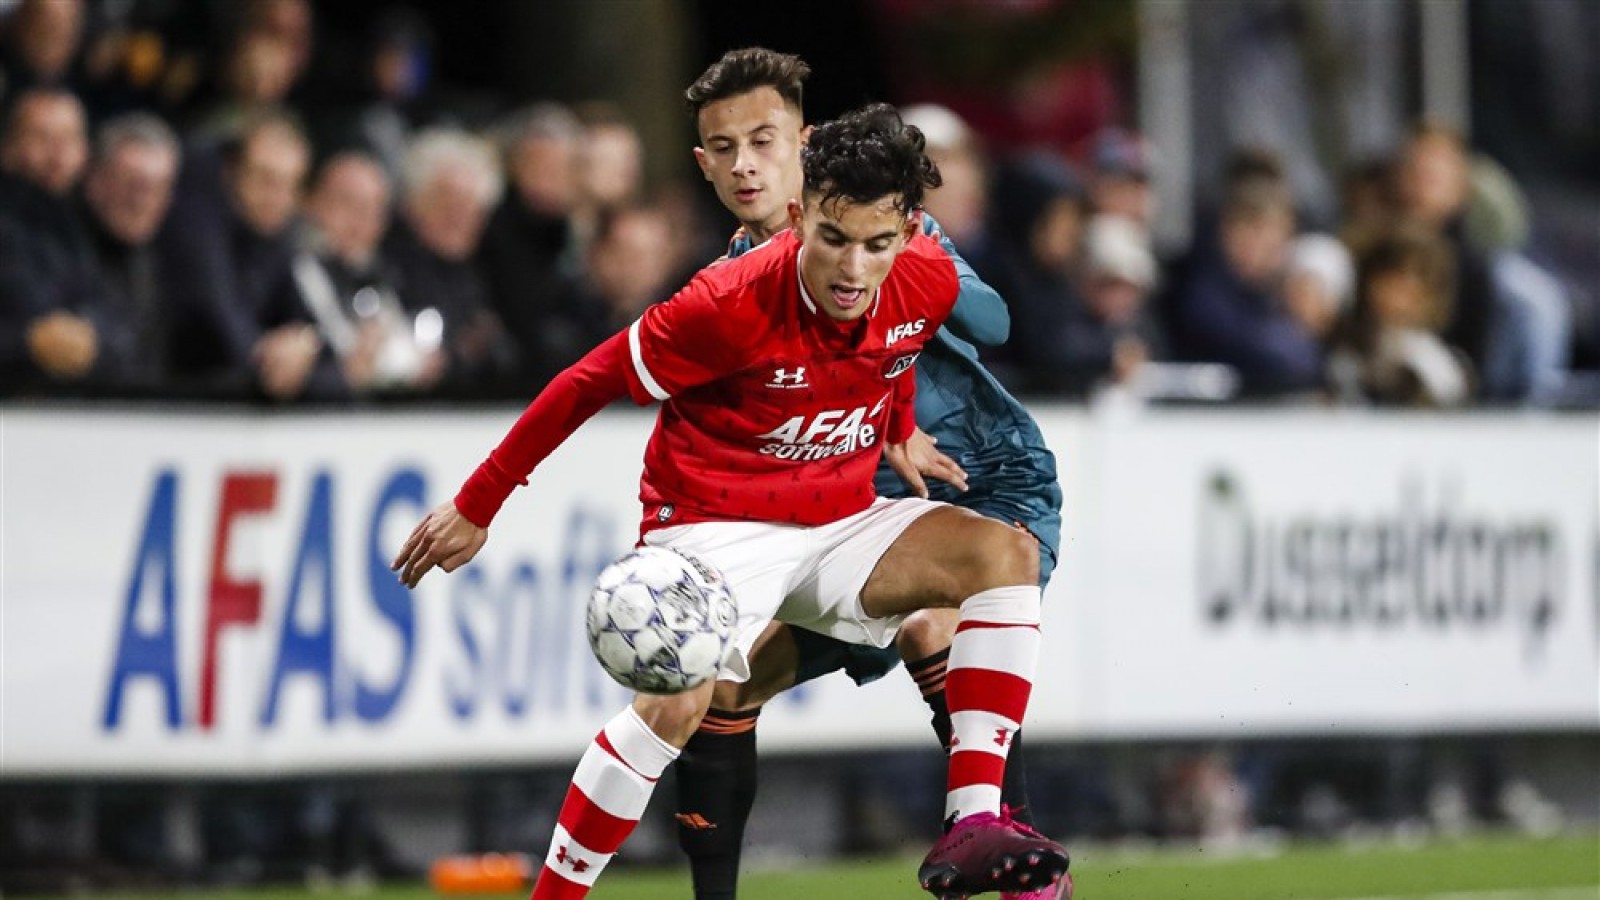 Une pépite néerlando-marocaine de 18 ans rejoint l’équipe première de AZ Alkmaar